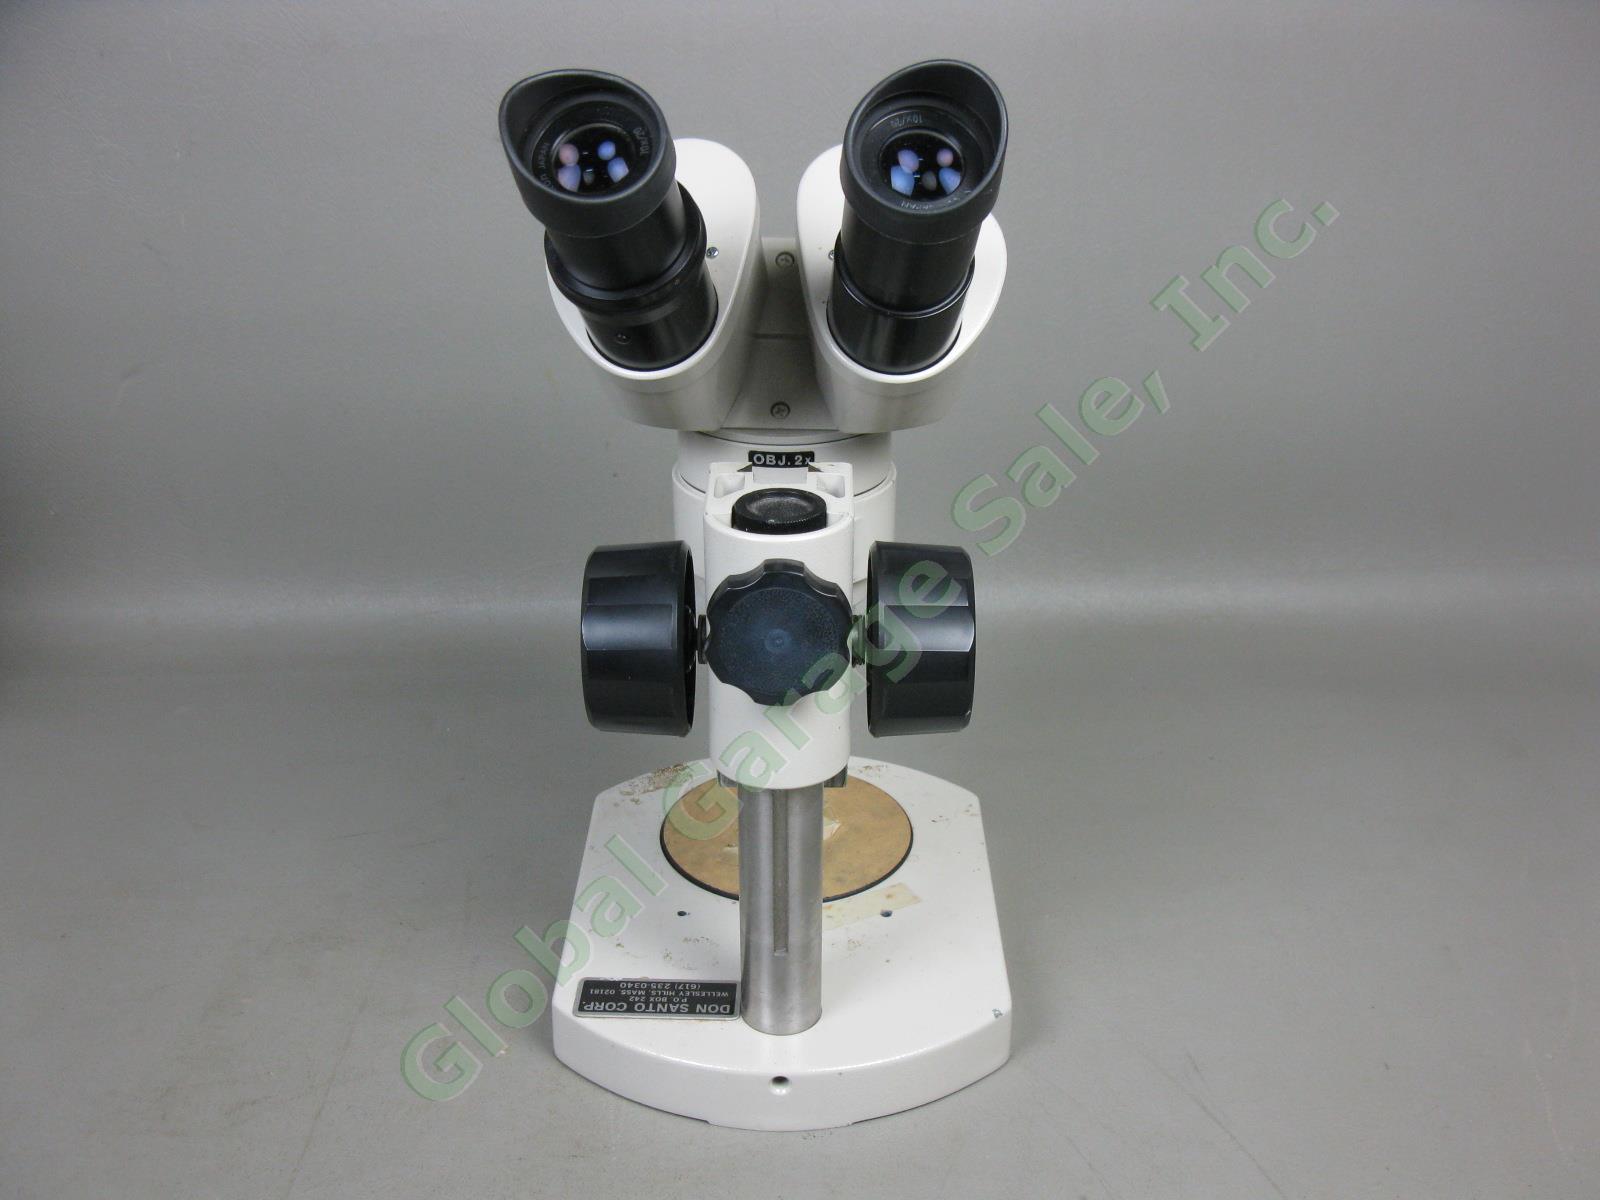 Nikon OBJ.2x Binocular Microscope W/ 10x/20 Eyepieces Stand #217542 No Reserve! 5